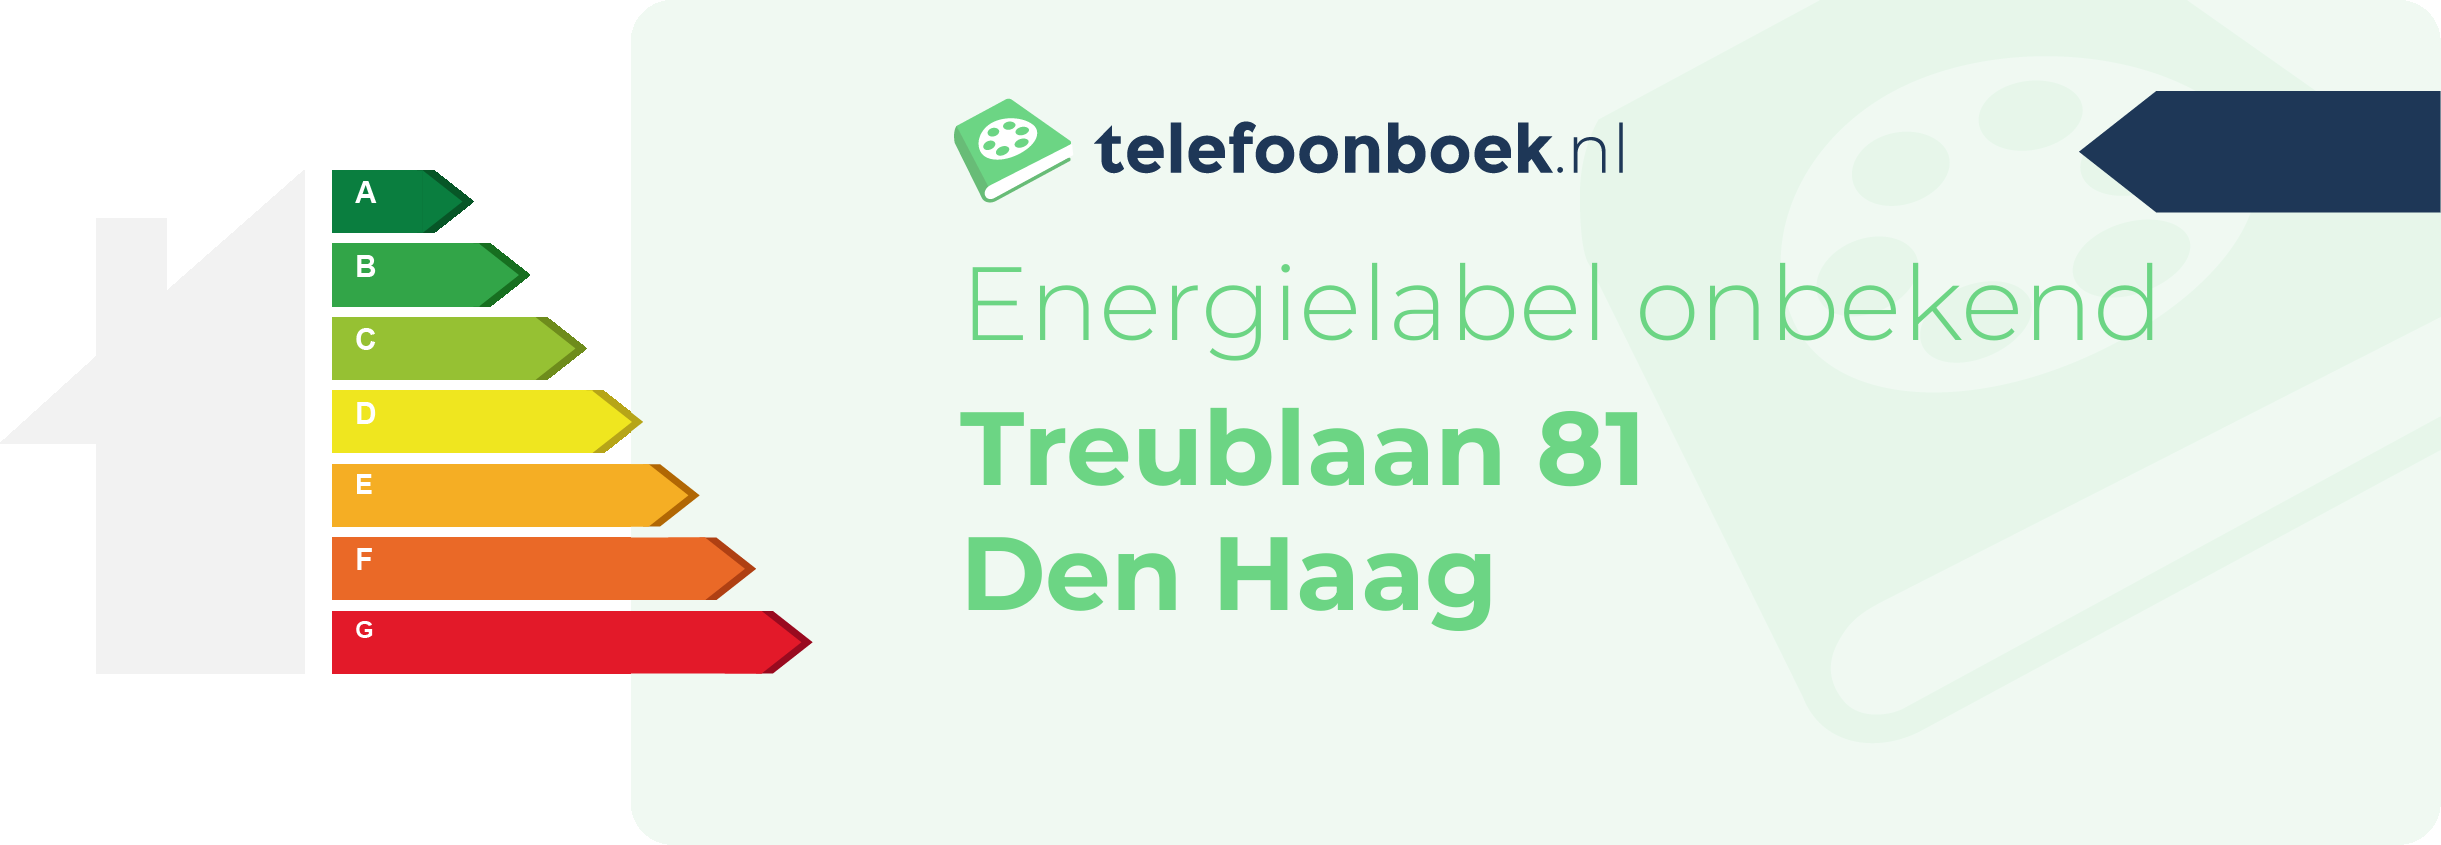 Energielabel Treublaan 81 Den Haag